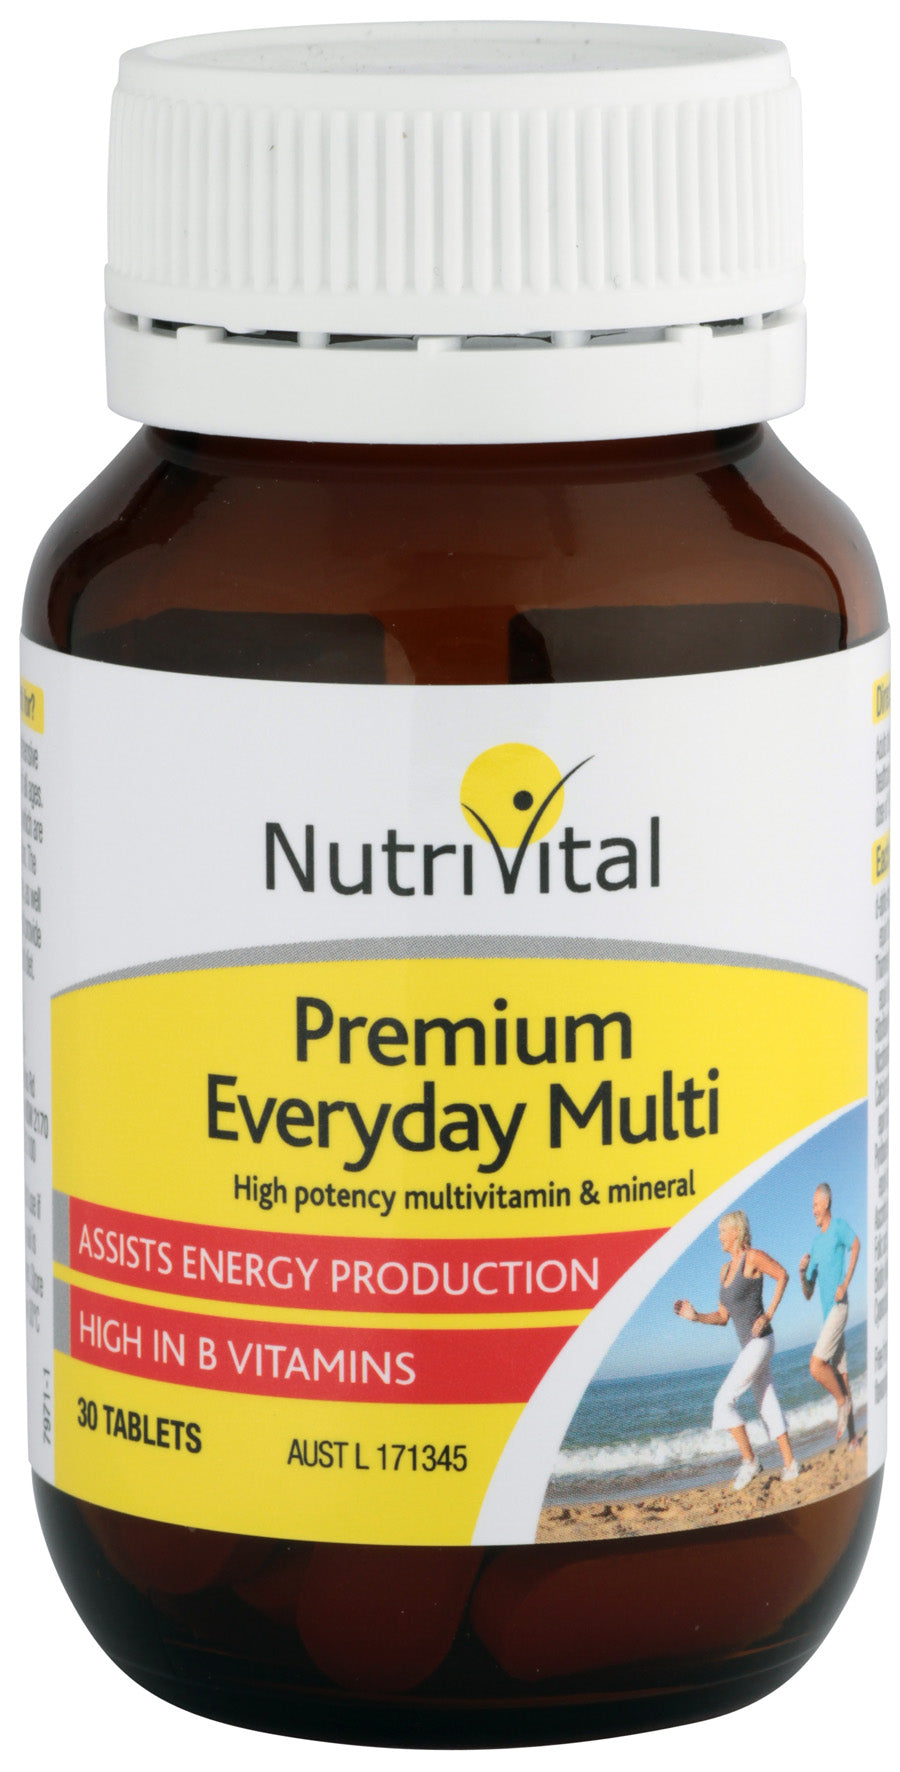 NutriVital Premium Everyday Multi - 60 Tablets